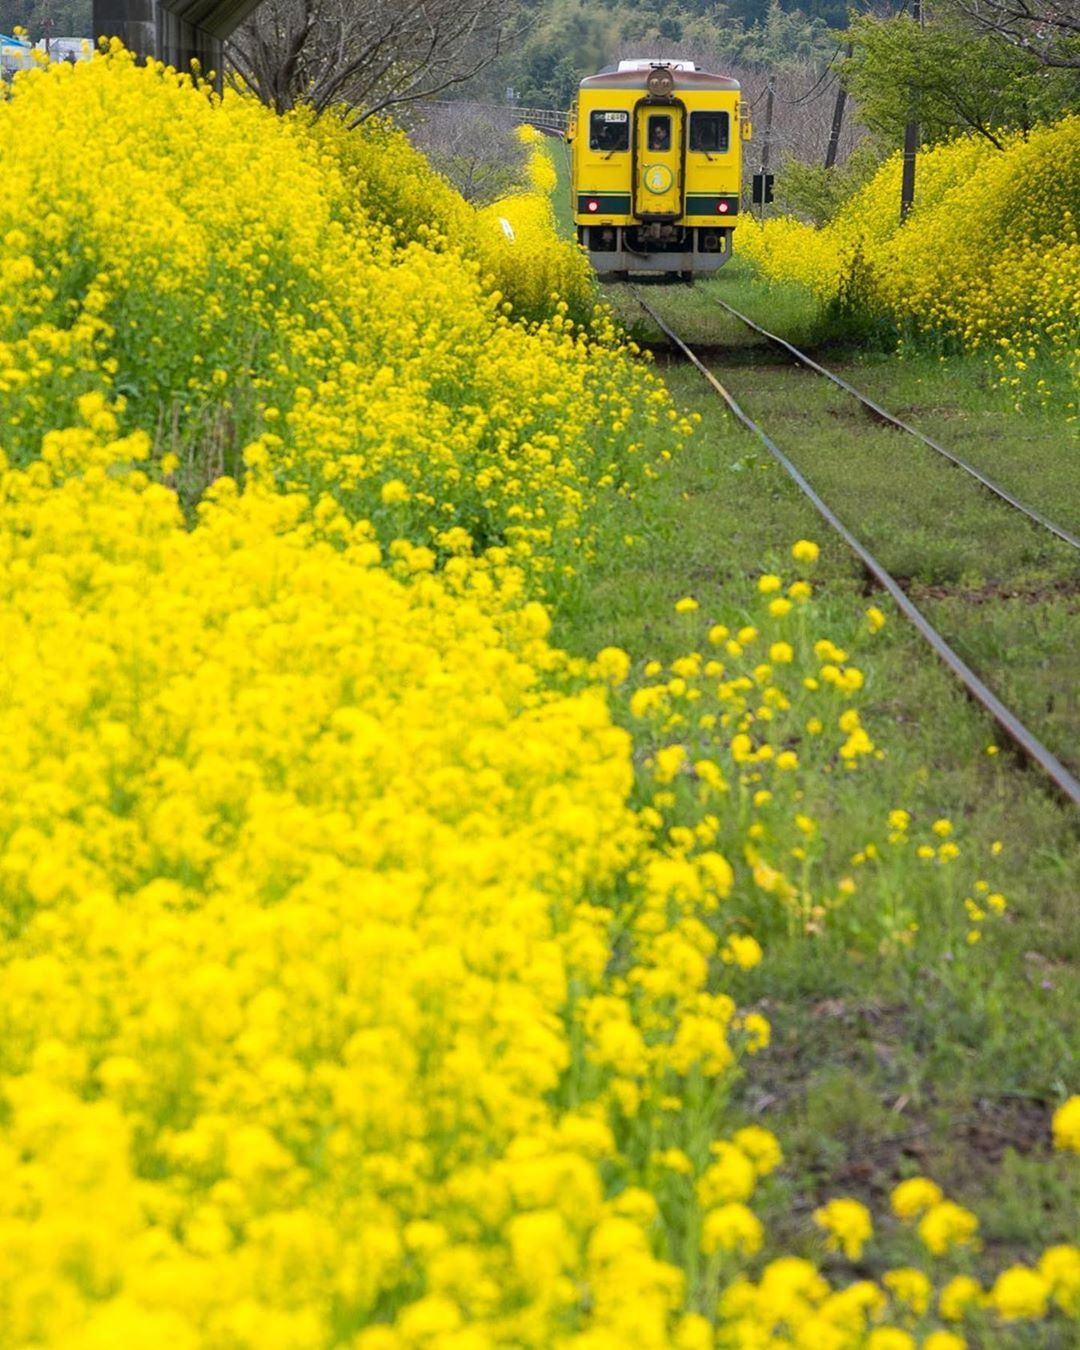 Retrip News Retrip 千葉 こちらは千葉県房総半島のいすみ市と大多喜町を走る いすみ鉄道です 春には線路沿いに菜の花畑が広がり のどかな景色を眺めることができますよ Wacoca Japan People Life Style